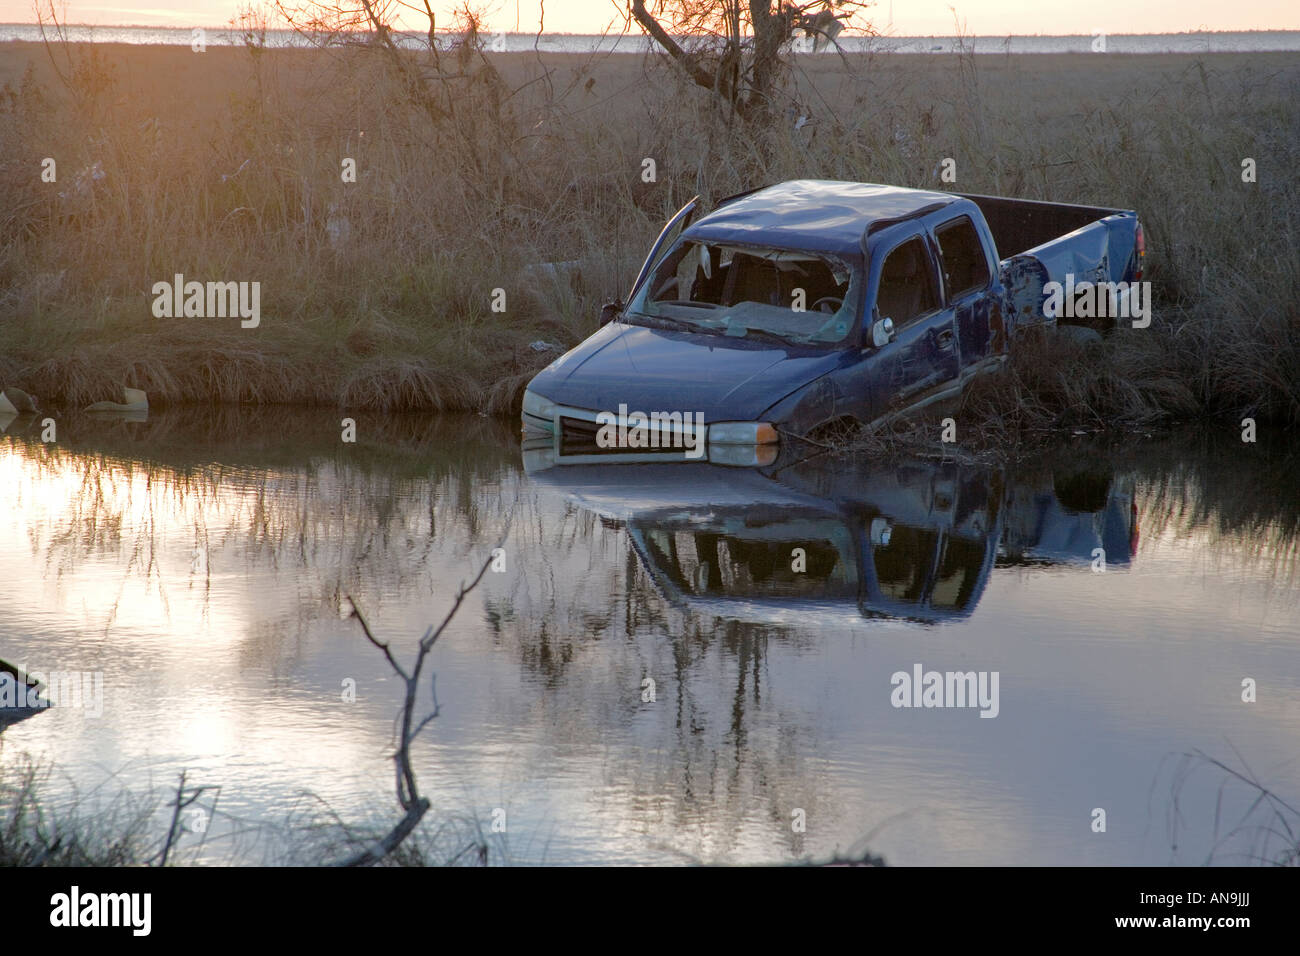 Dommages causés par l'ouragan Katrina, près de la Nouvelle Orléans en Louisiane camion bleu coincé dans les eaux de crue Banque D'Images